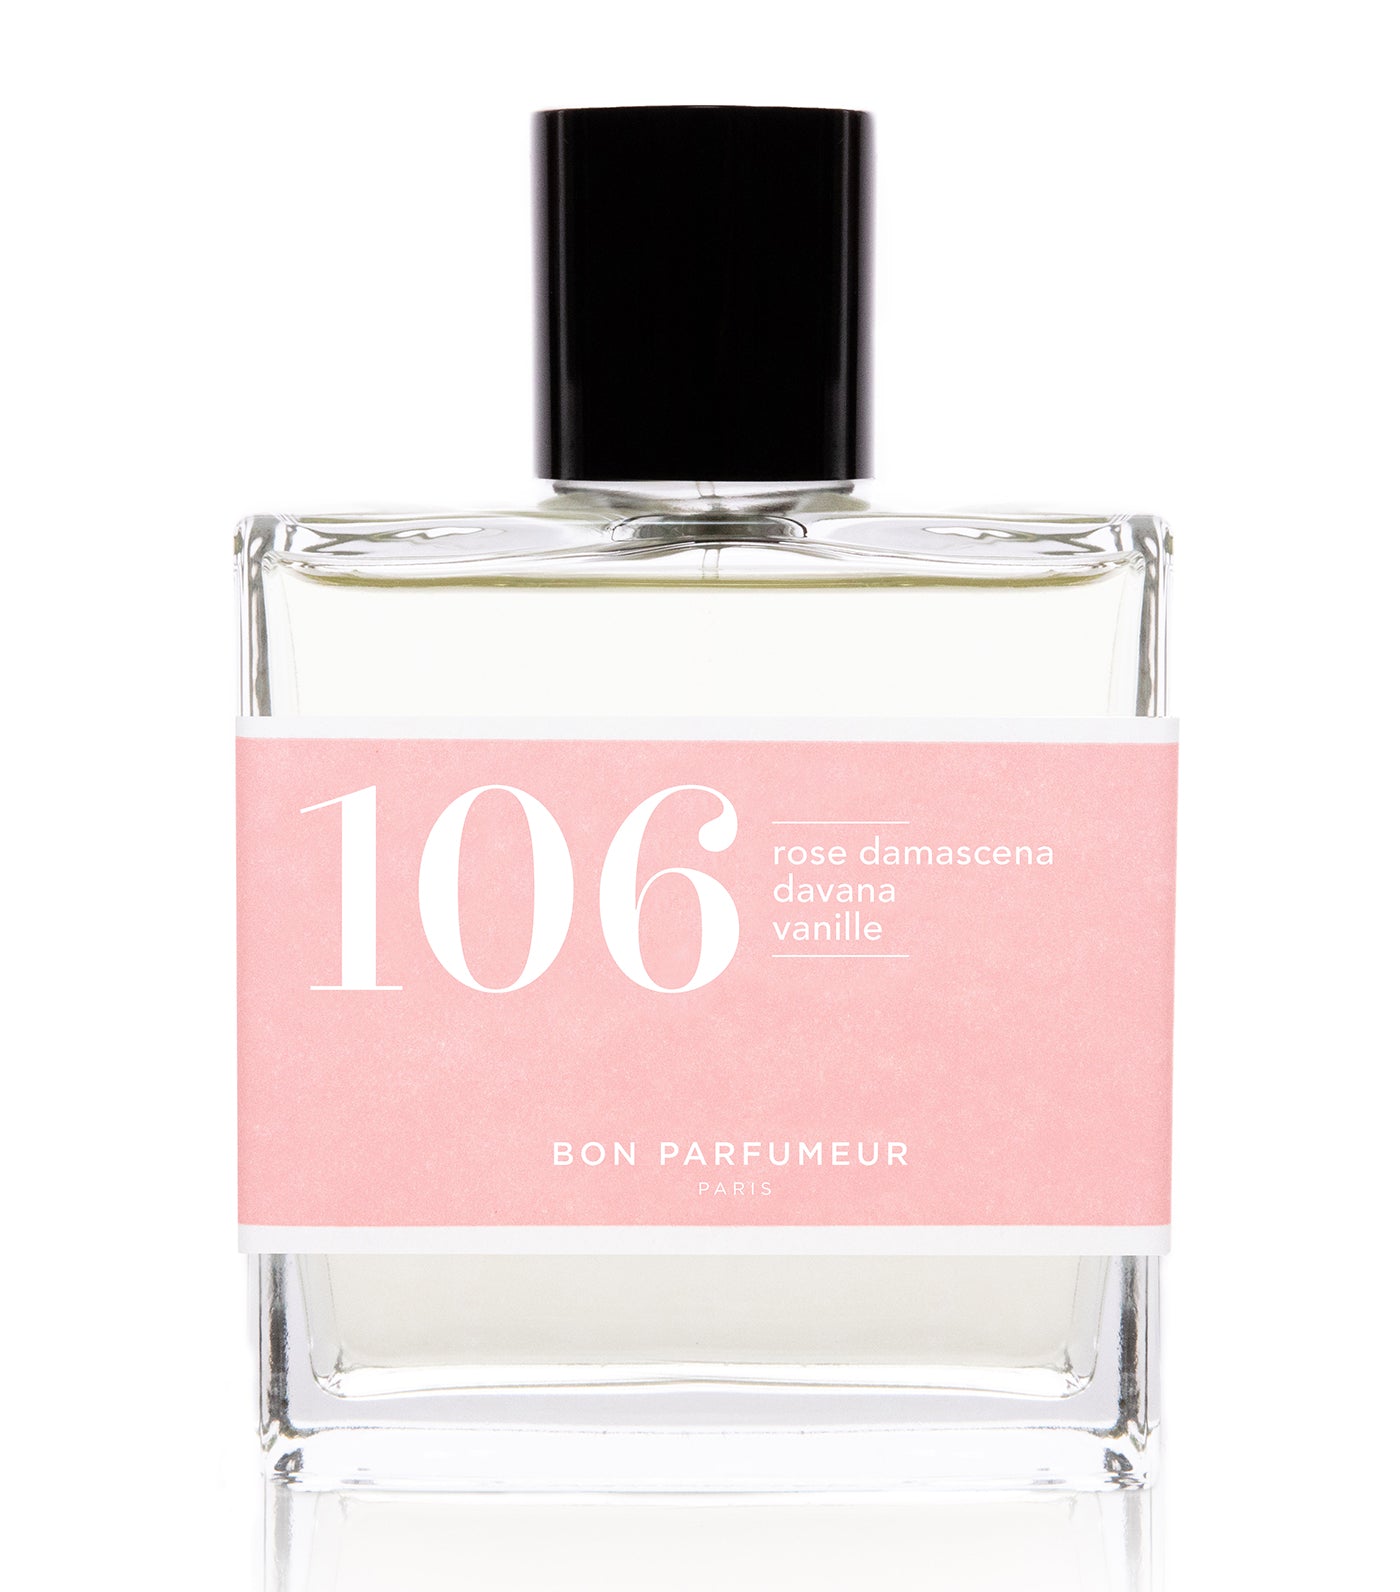 Eau de parfum 106: damascena rose, davana, vanilla